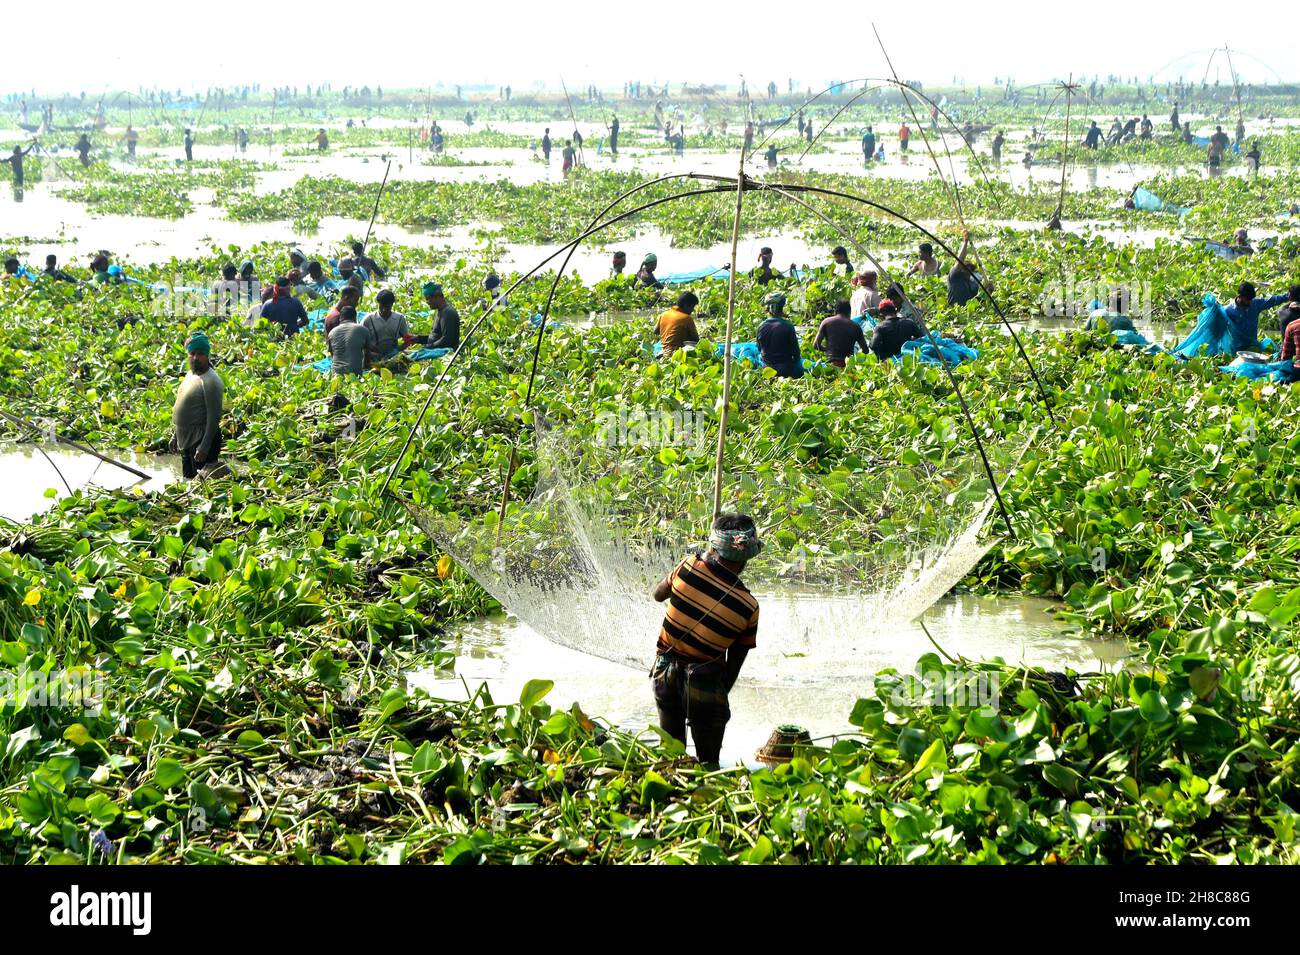 Pabna. 27th. November 2021. Am 27. November 2021 fangen die Menschen in einem sumpfigen Land mit großem Netz in der Hand in Pabna, Bangladesch, Fisch. Quelle: Xinhua/Alamy Live News Stockfoto